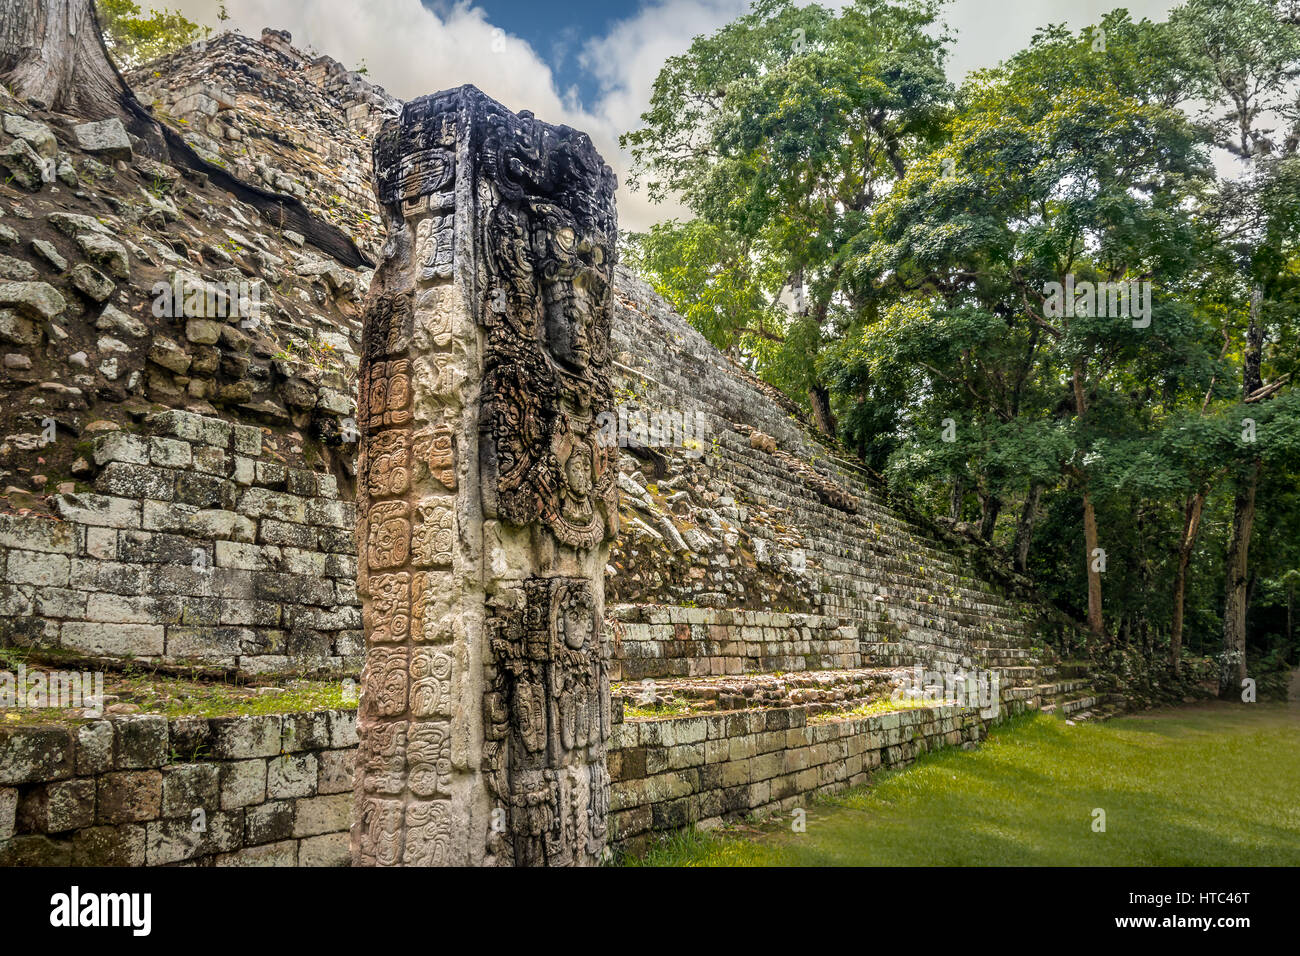 Pyramide, Treppen und geschnitzt Stella in Maya-Ruinen - Ausgrabungsstätte Copan, Honduras Stockfoto